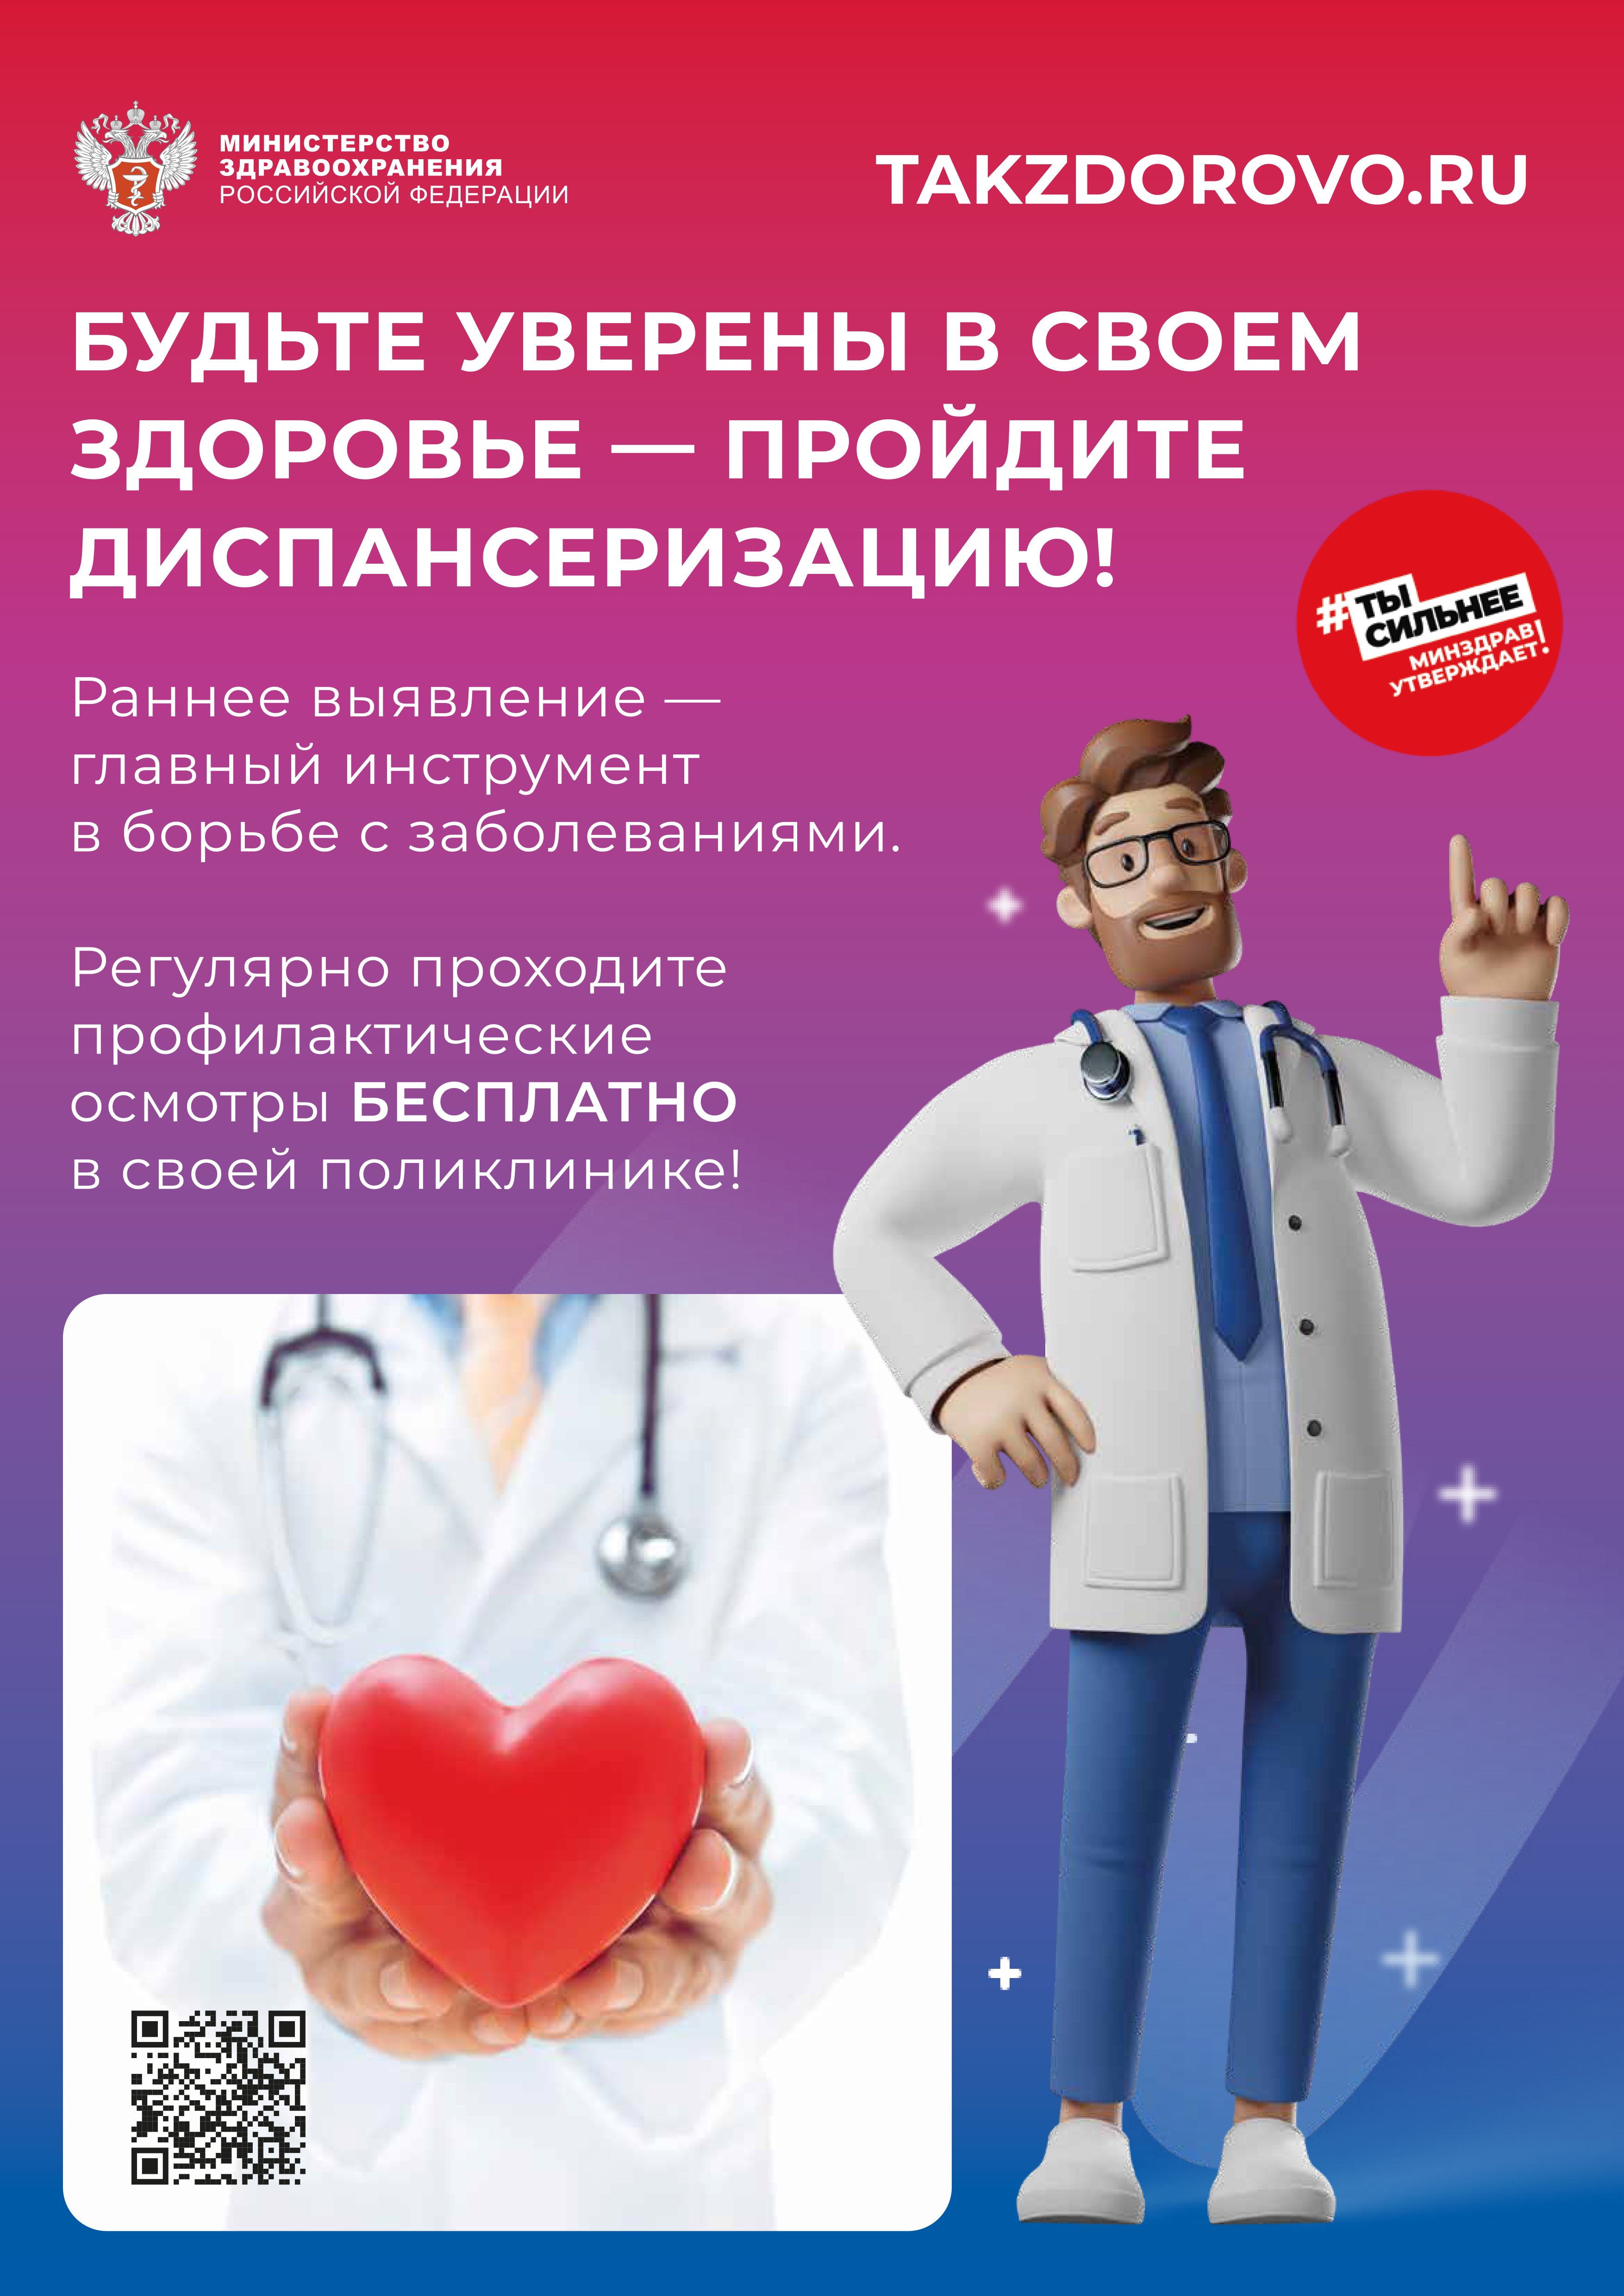 Проект министерства здравоохранения Российской Федерации TAKZDOROVO